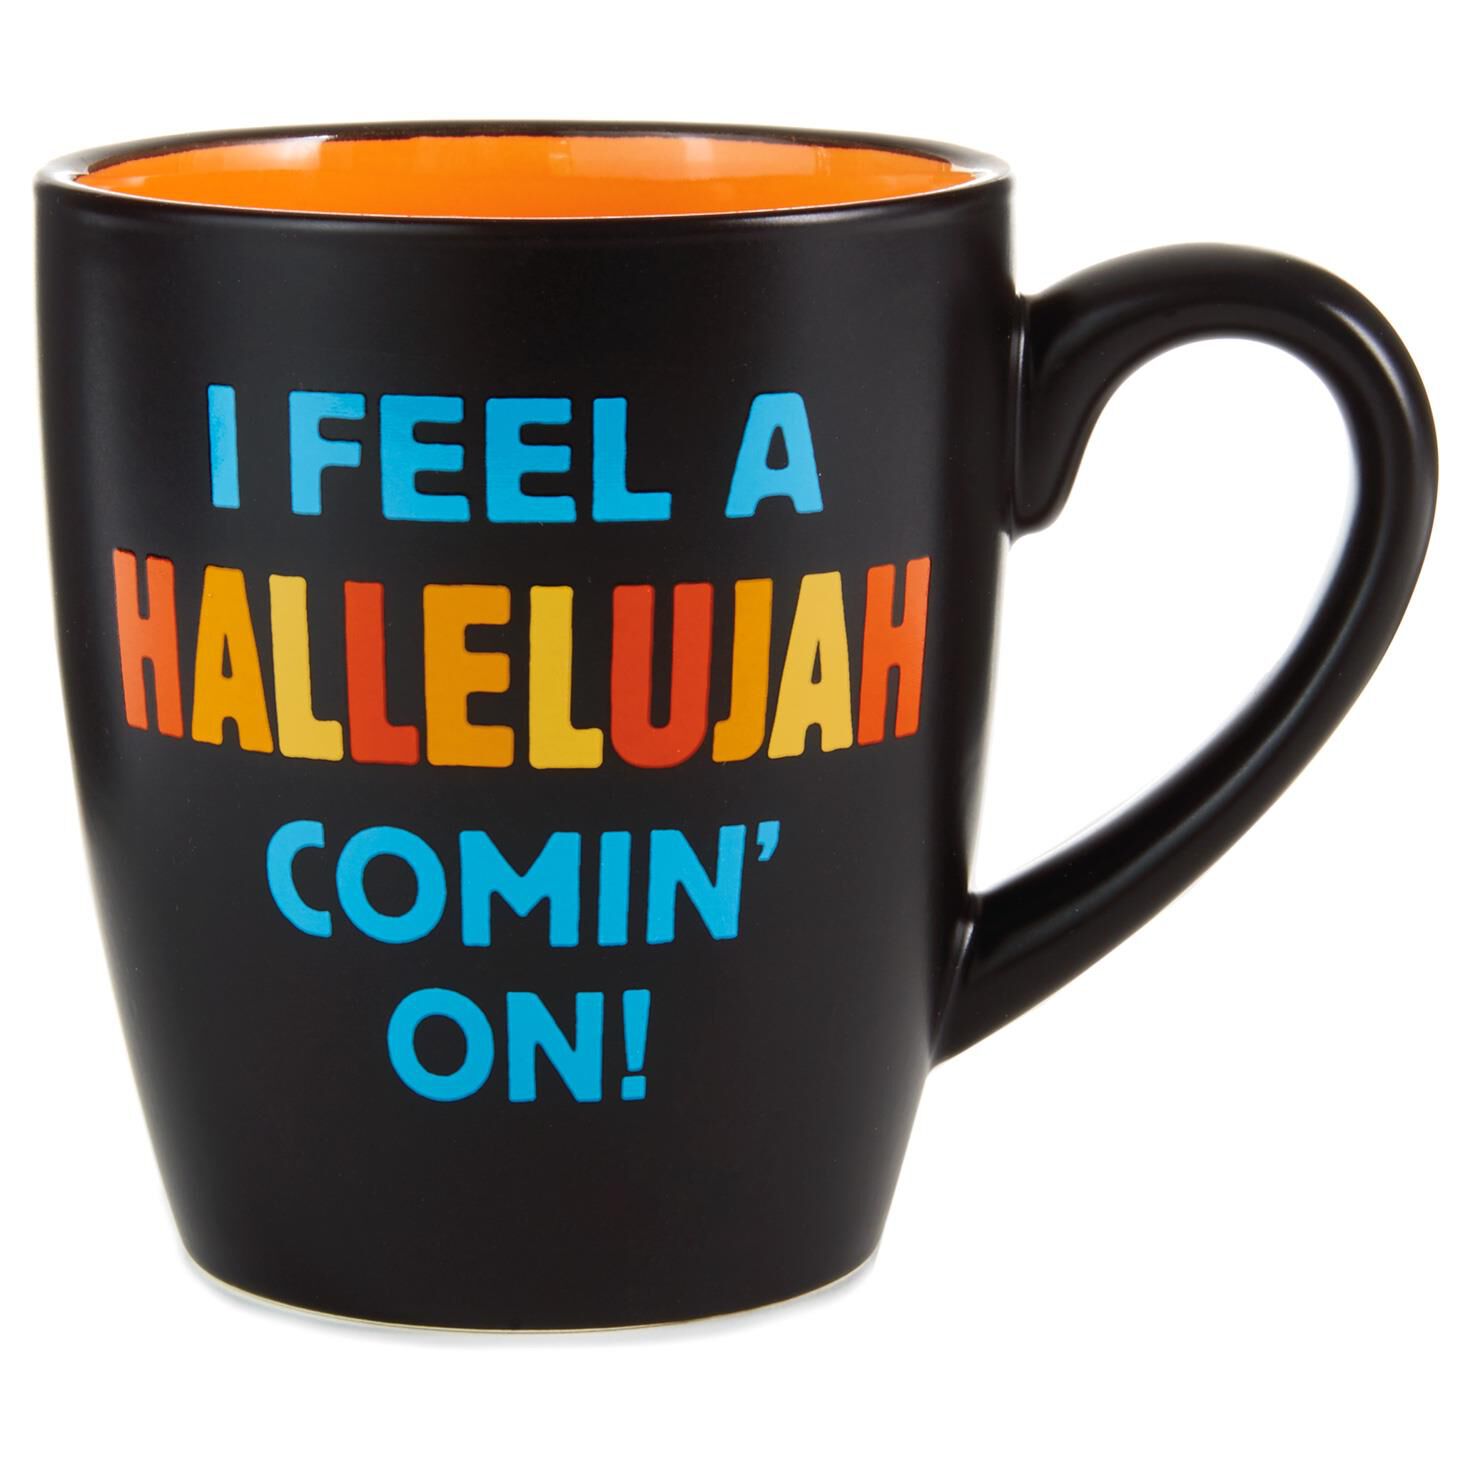 hallelujah-ceramic-mug-root-1kei1035_1470_1.jpg